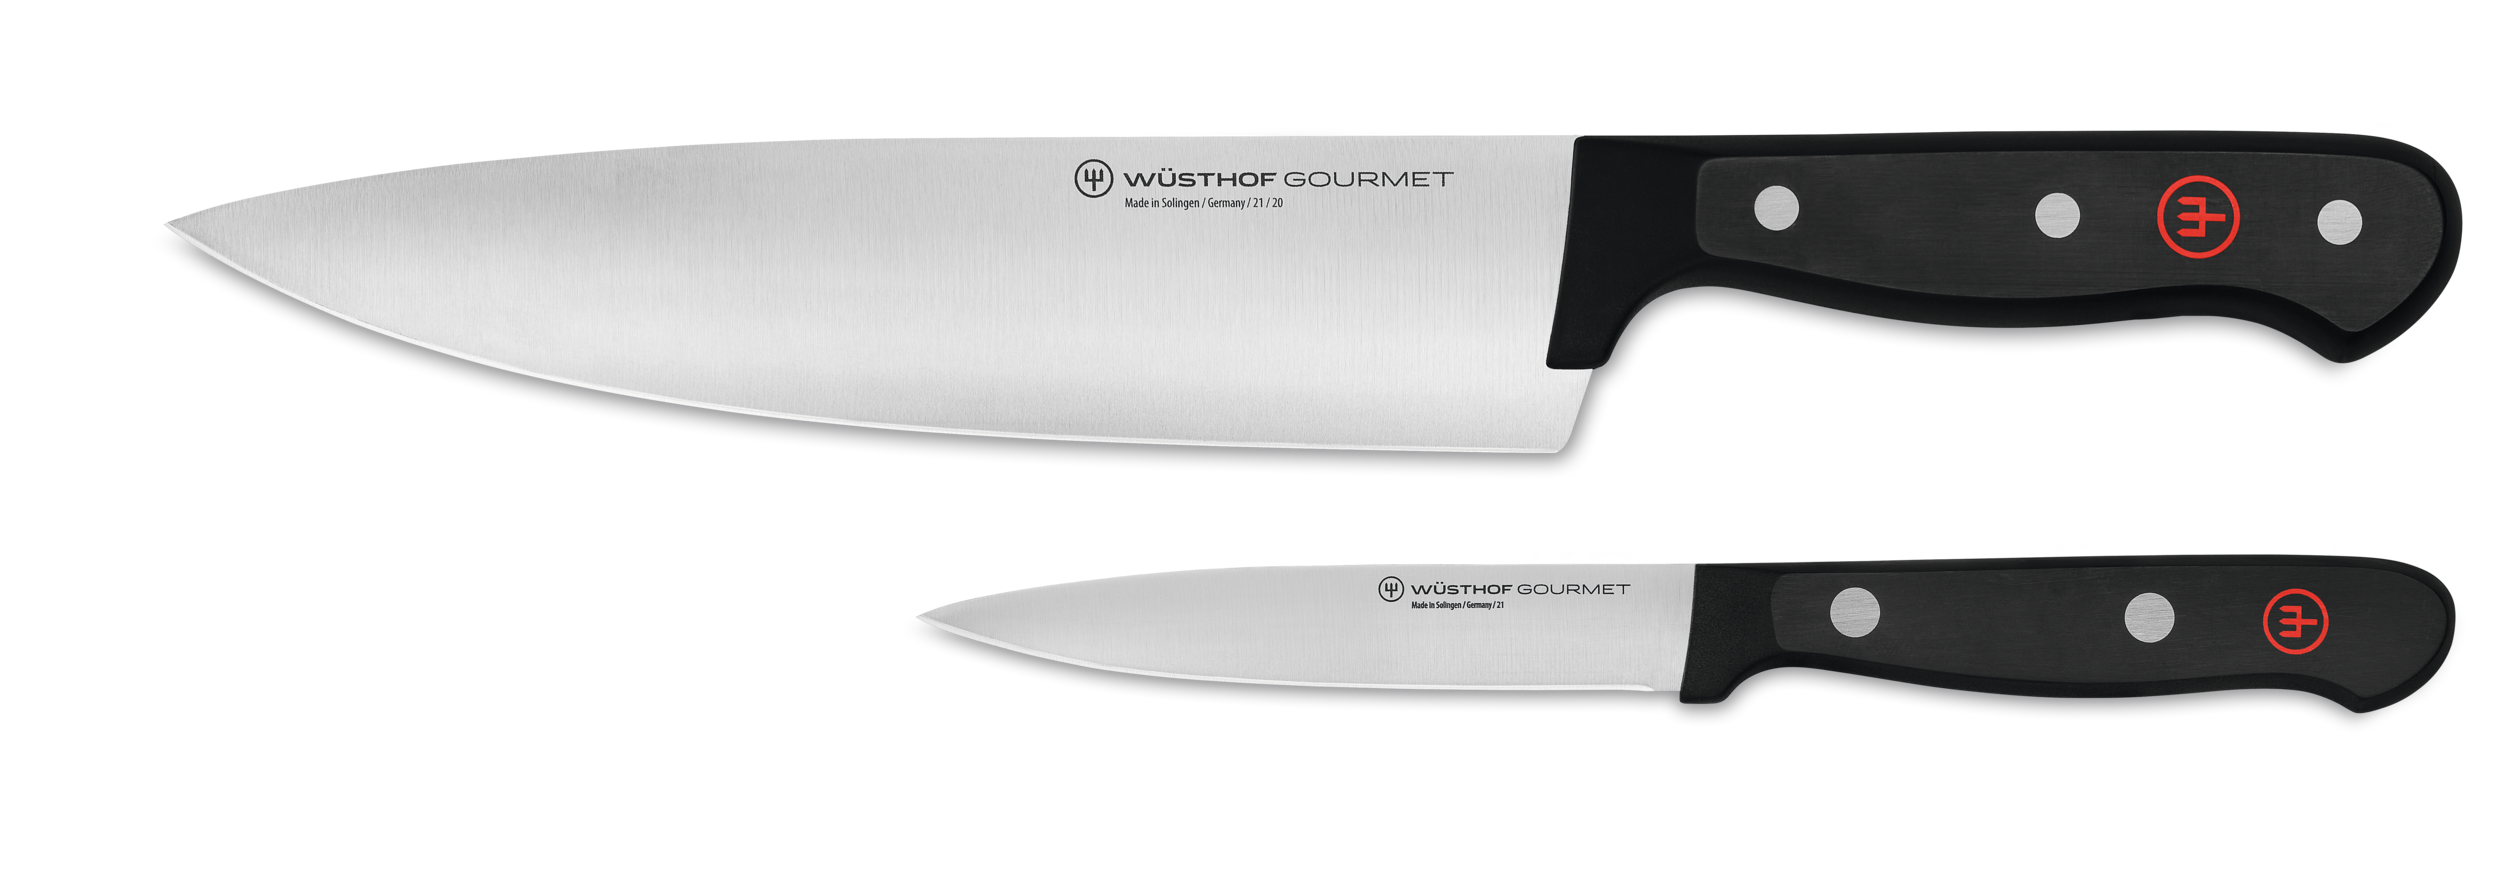 Wusthof Gourmet 10-Piece Acacia Knife Block Set at Swiss Knife Shop